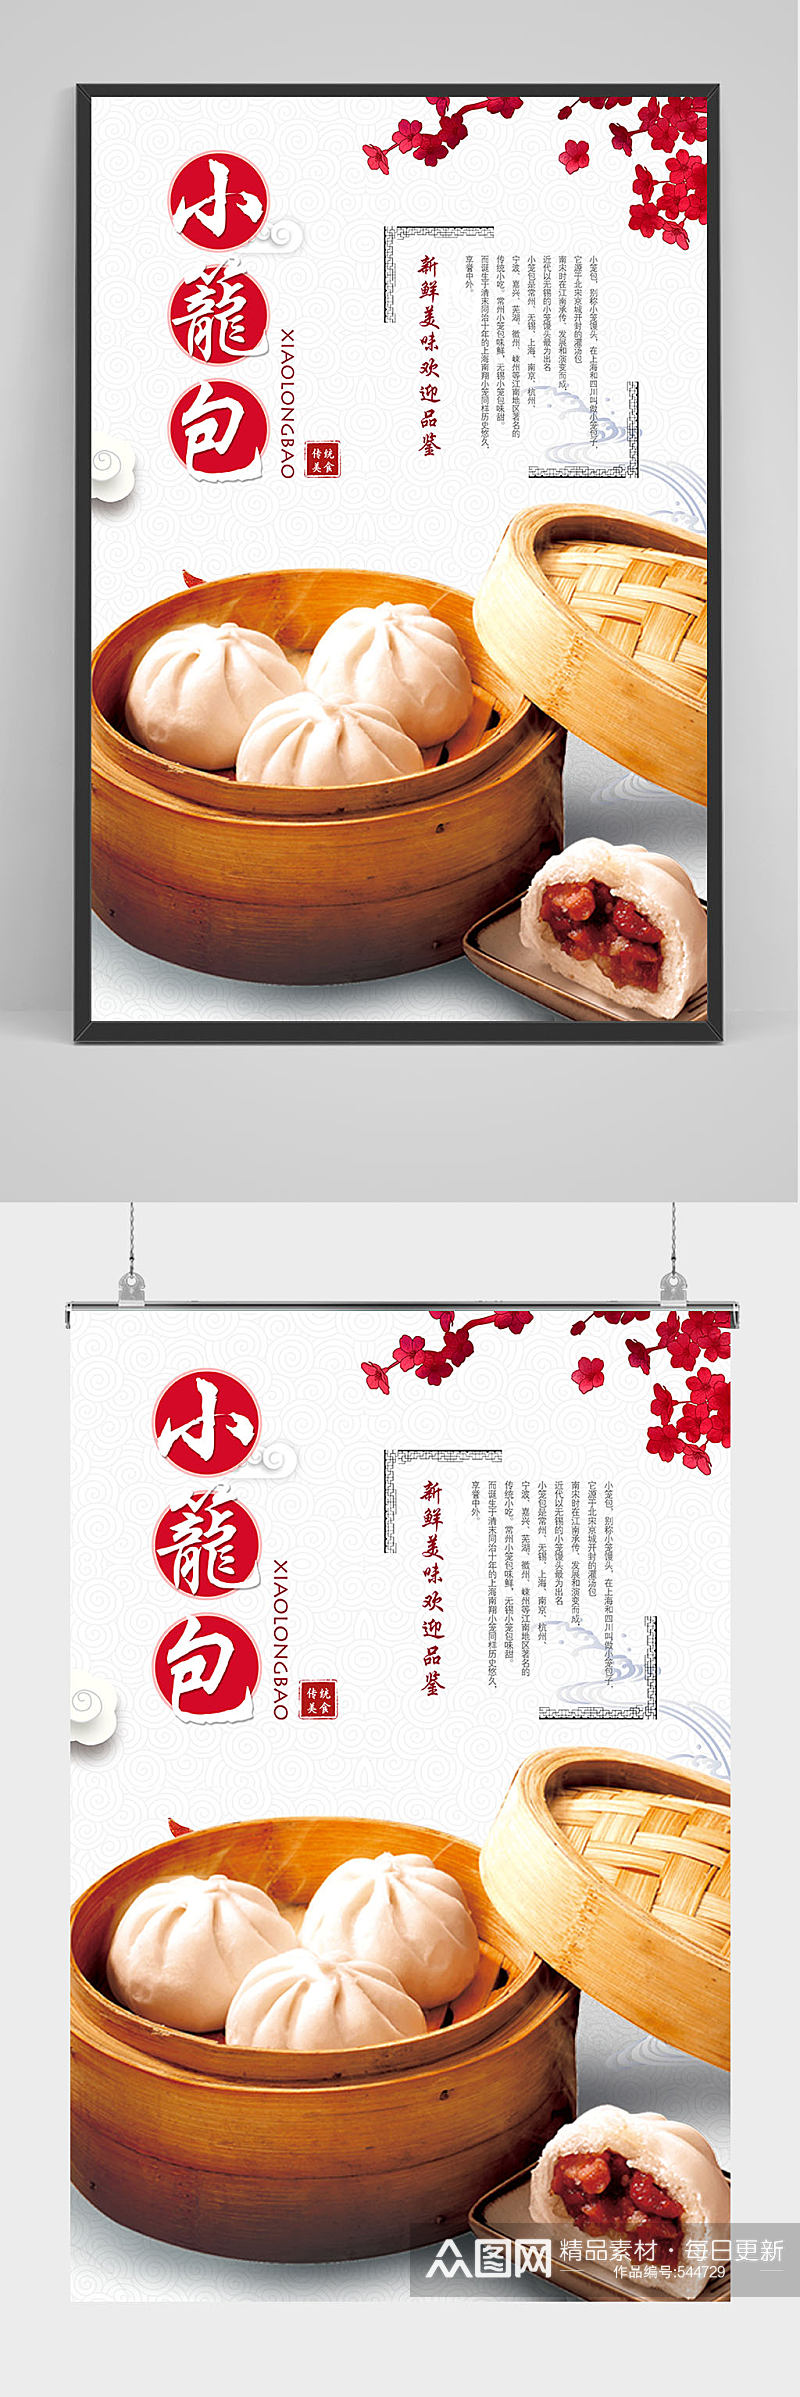 中国风美味小笼包包子海报设计素材